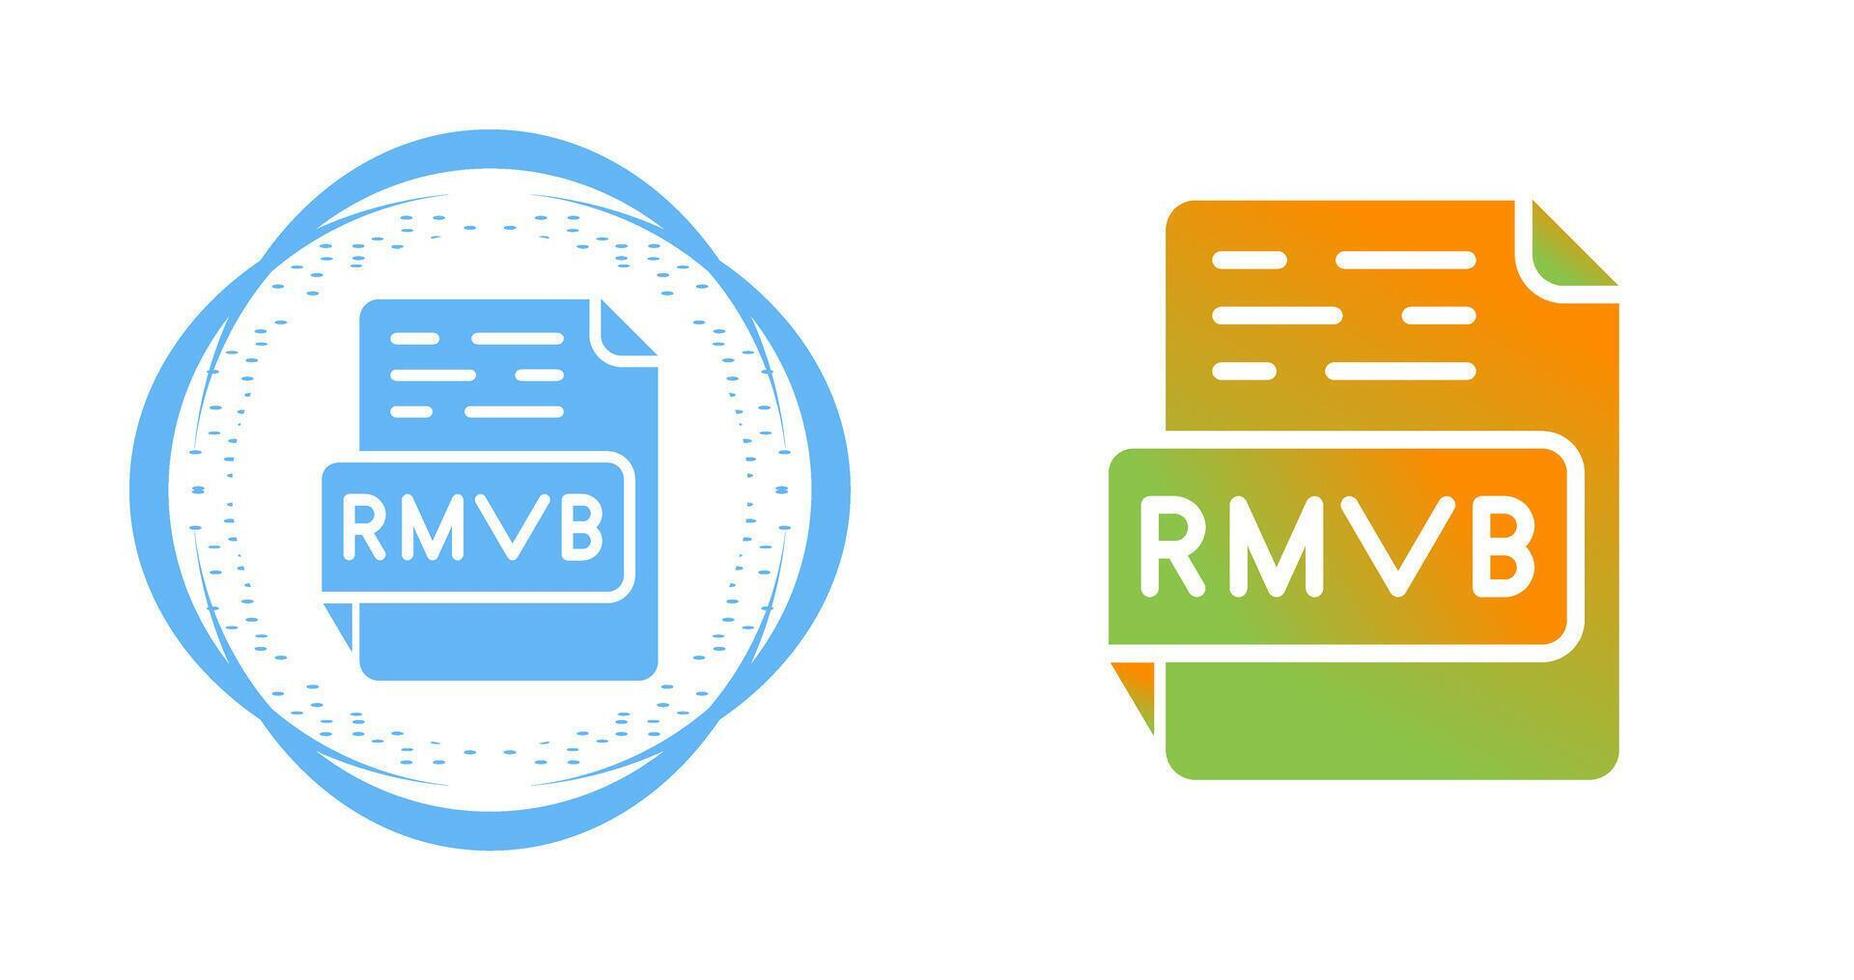 RMVB Vector Icon